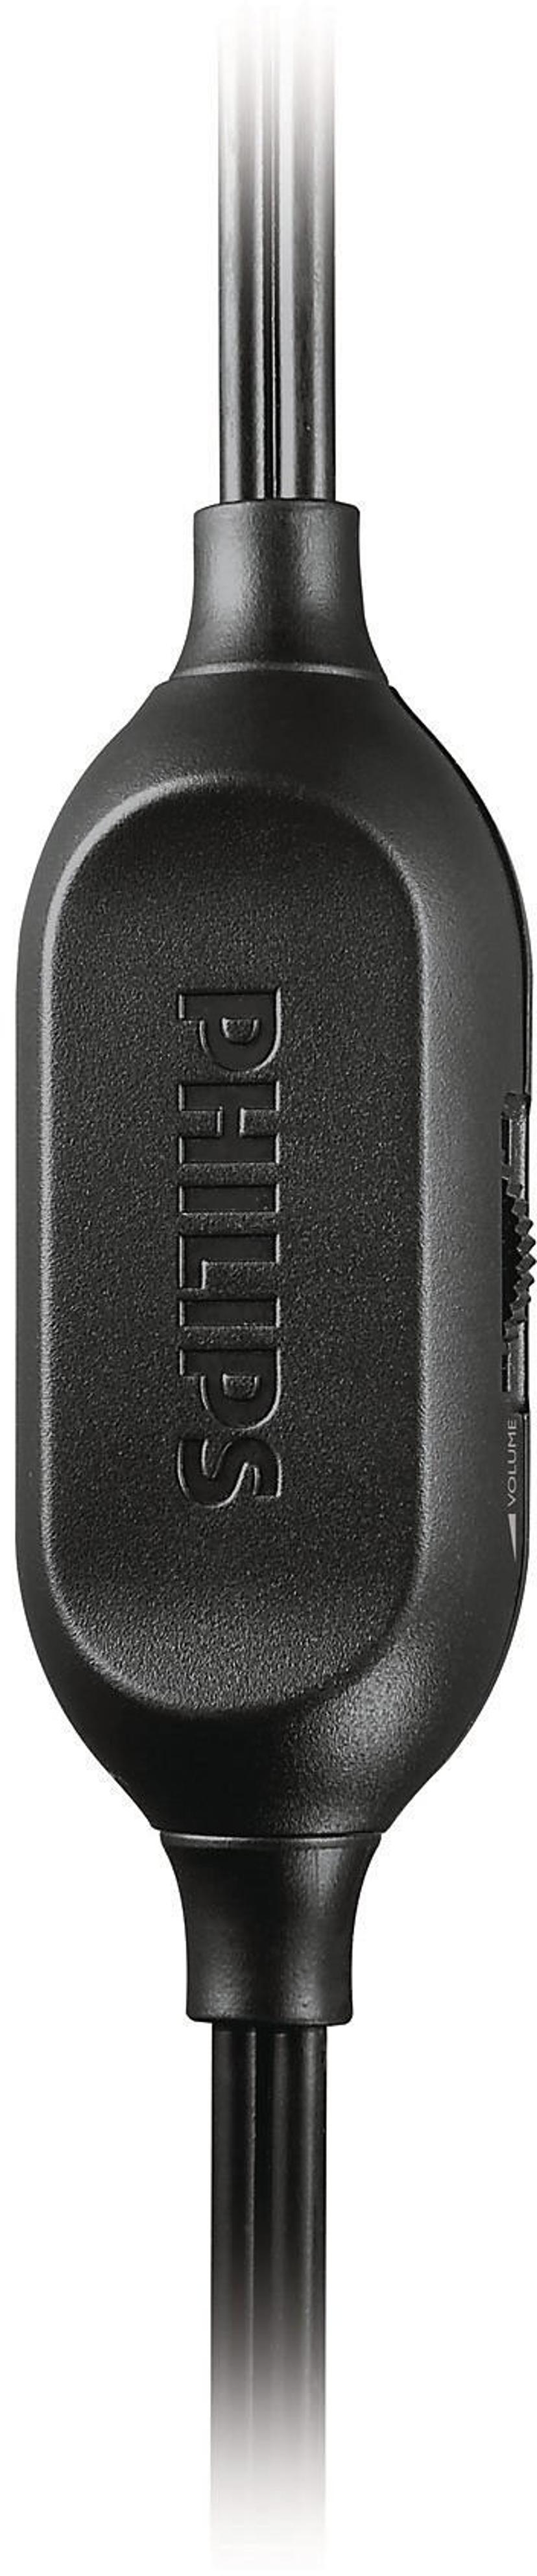 Philips SHP2500 Kuulokkeet 3,5 mm jakkiliitin, 6.35 mm jack Stereo Hopea, Musta